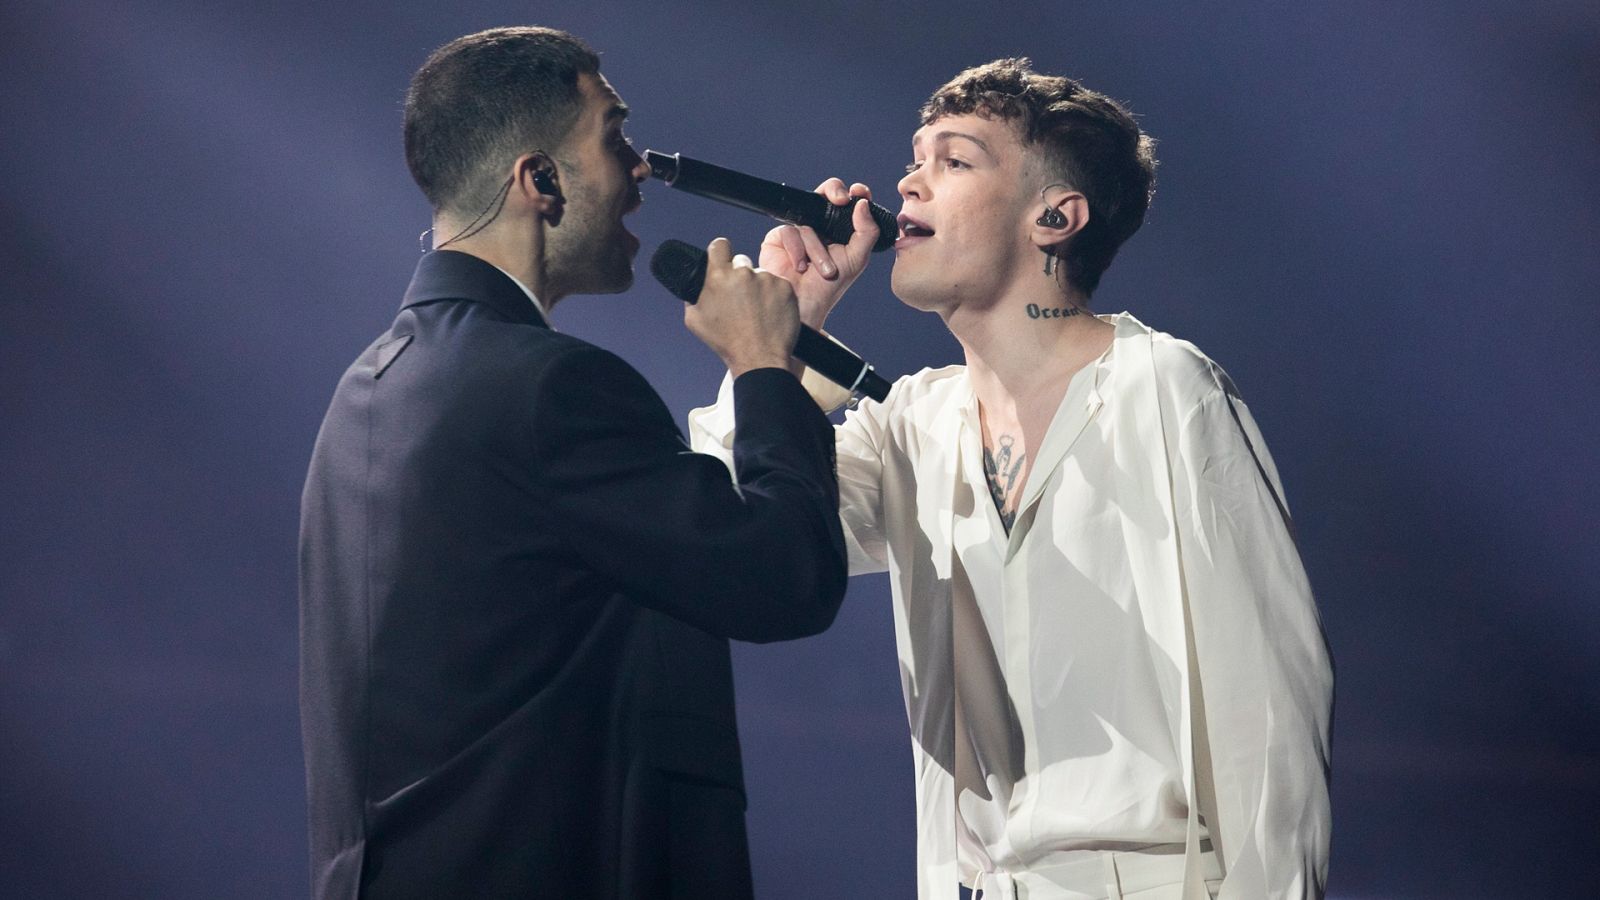 Eurovisión 2022 - Italia: Mahmood & BLANCO canta "Brívidi" en la semifinal 1 